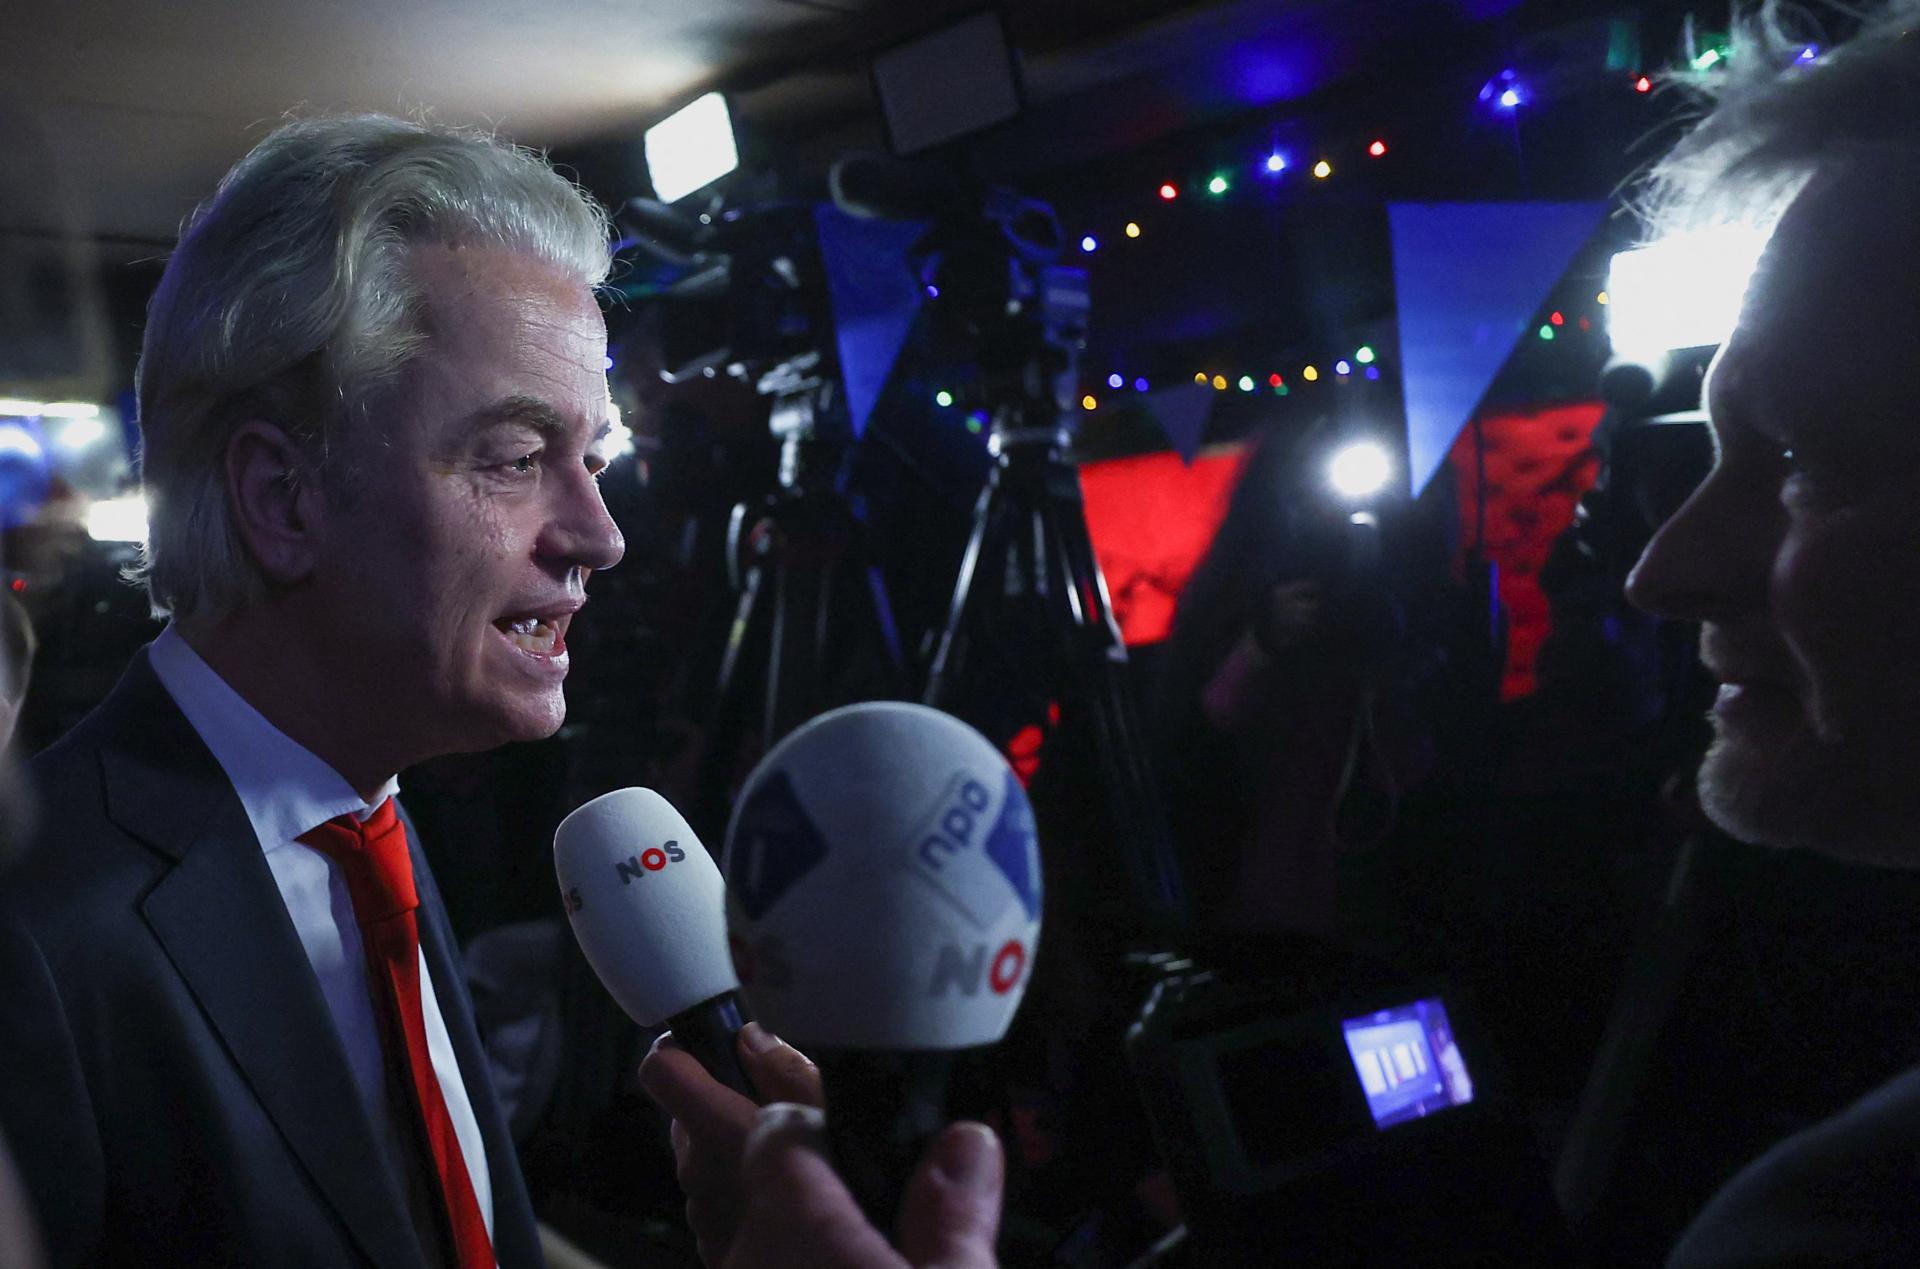 Európe hrozia otrasy. Holandské voľby jasne vyhrala Wildersova strana, ktorý chce referendum o odchode z EÚ